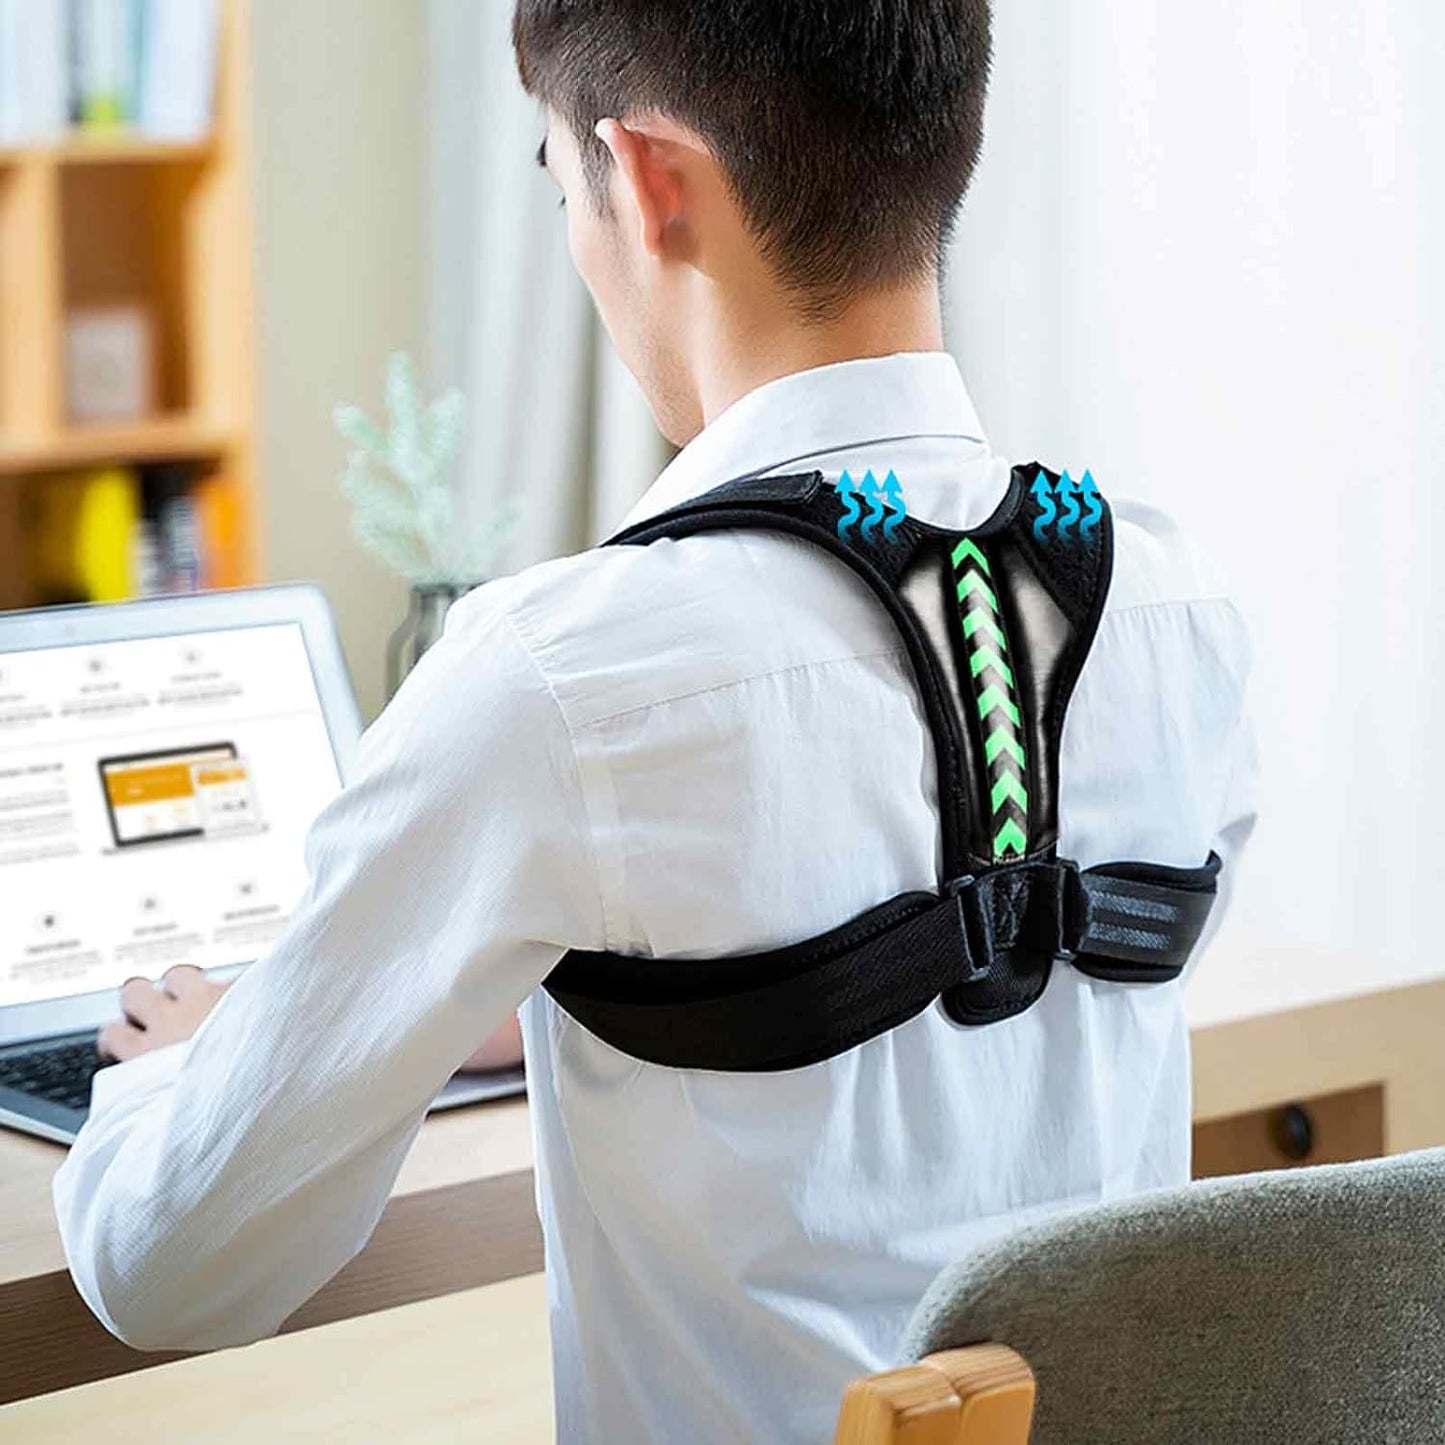 Verstellbarer Haltungskorrektor für Schlüsselbeinunterstützung | lindert Nacken-, Rücken- und Schulterschmerzen1